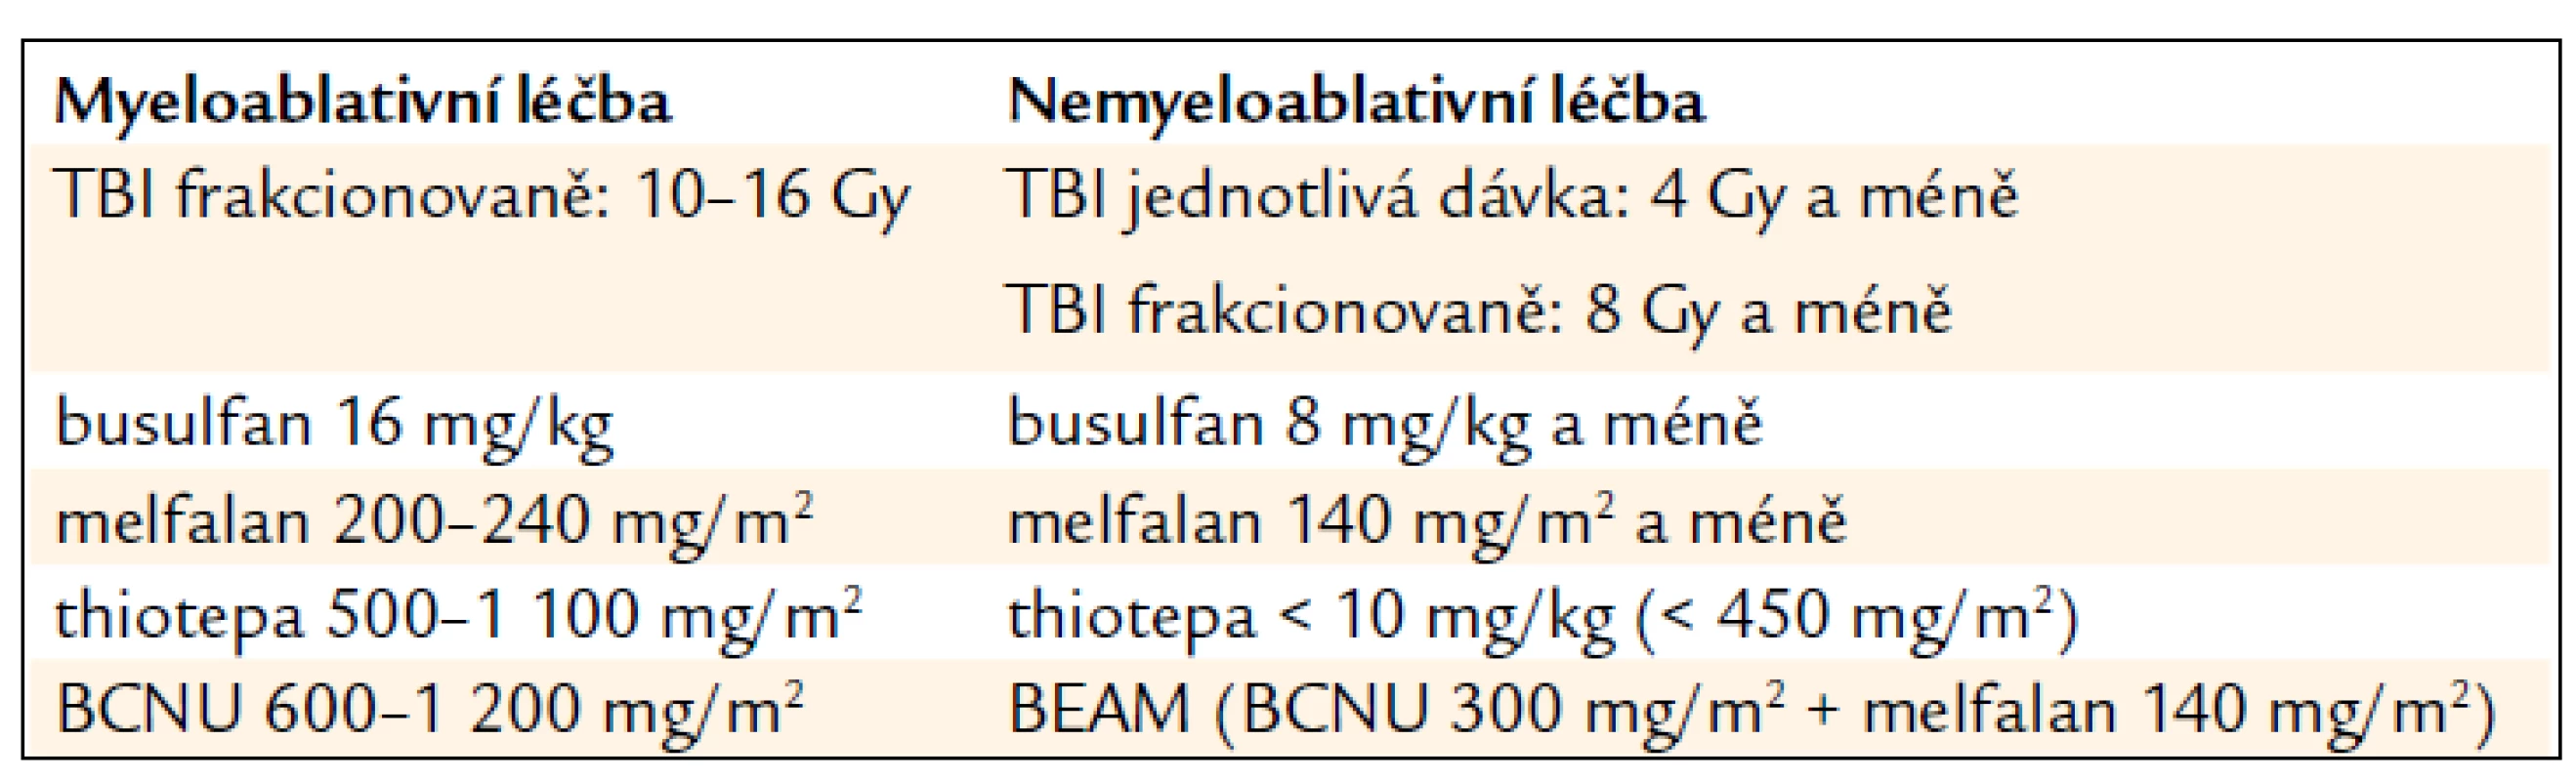 Všeobecně akceptovaná kritéria pro MA a NMA dávky TBI a léků<sup>1</sup>.